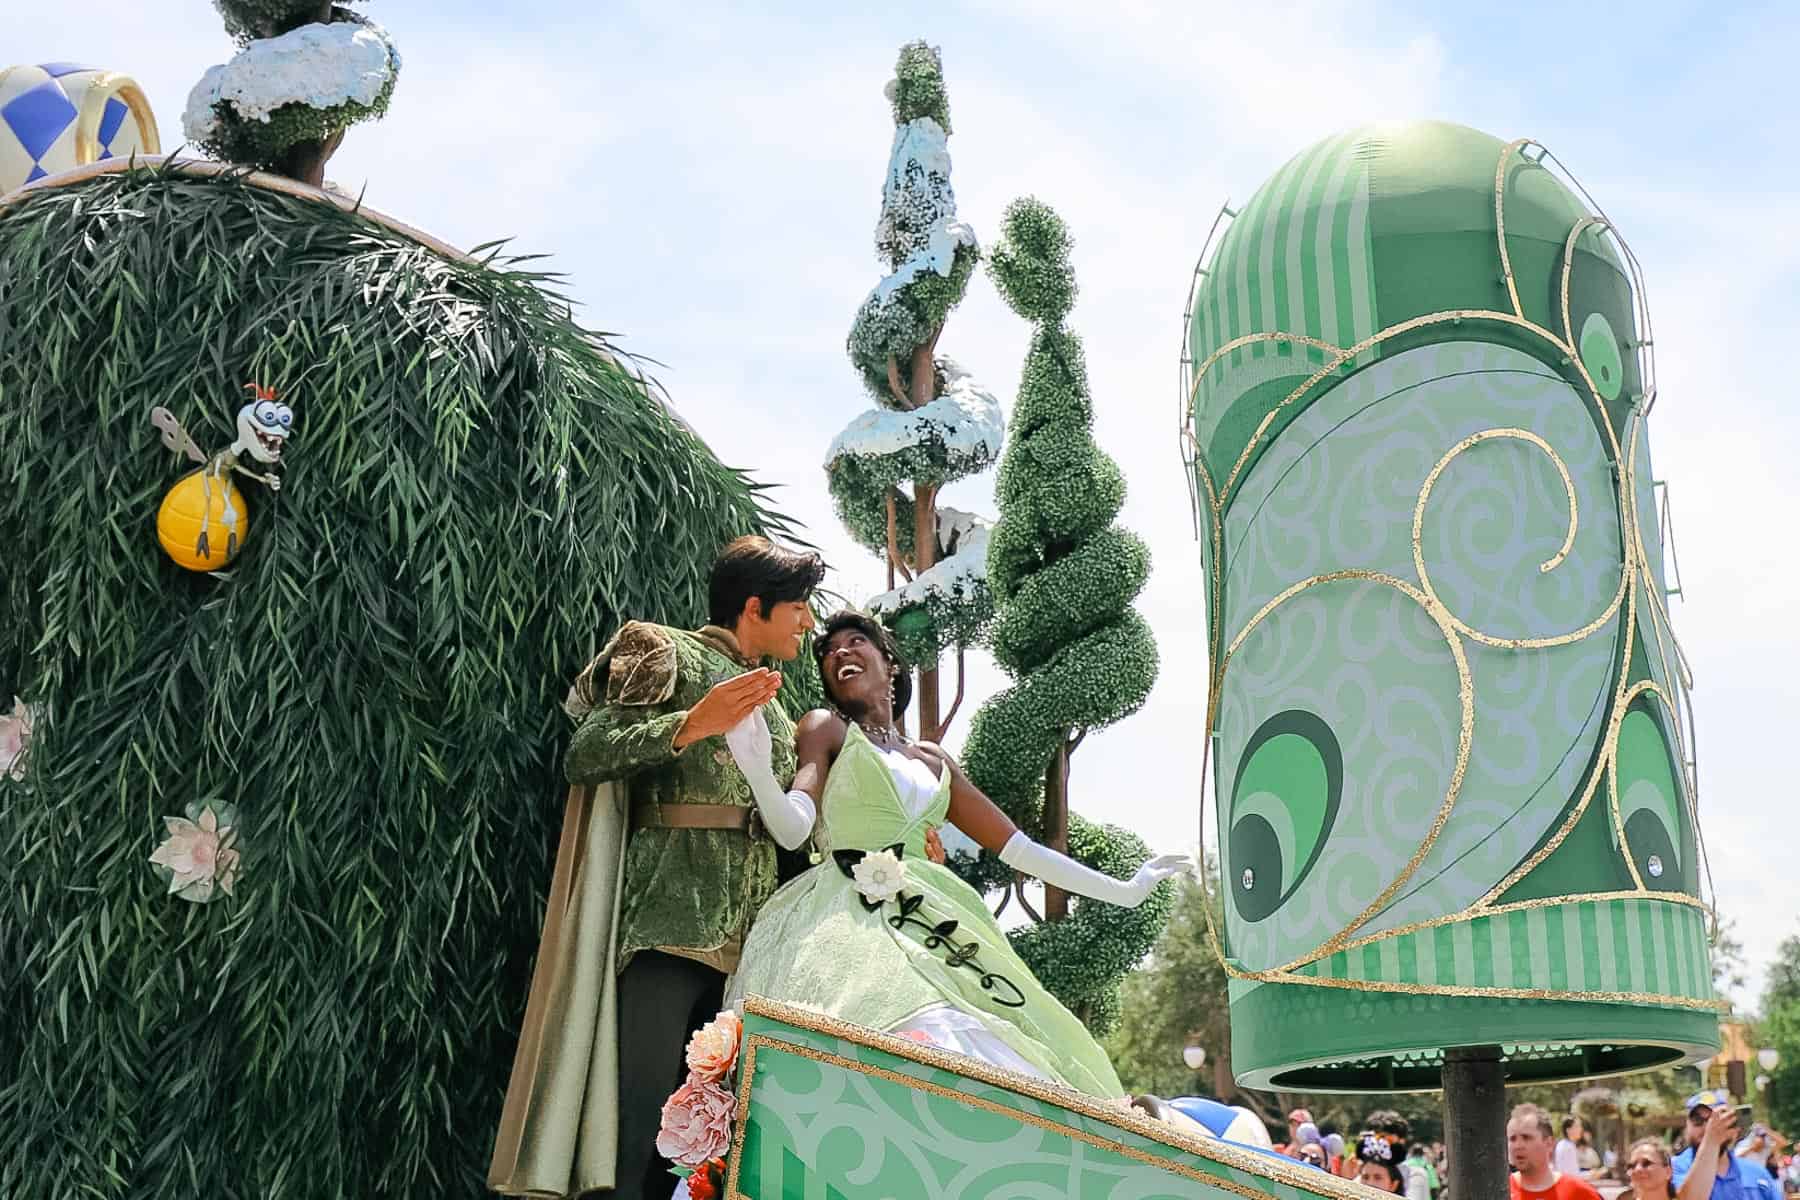 Prince Naveen and Princess Tiana during the parade at Magic Kingdom. 